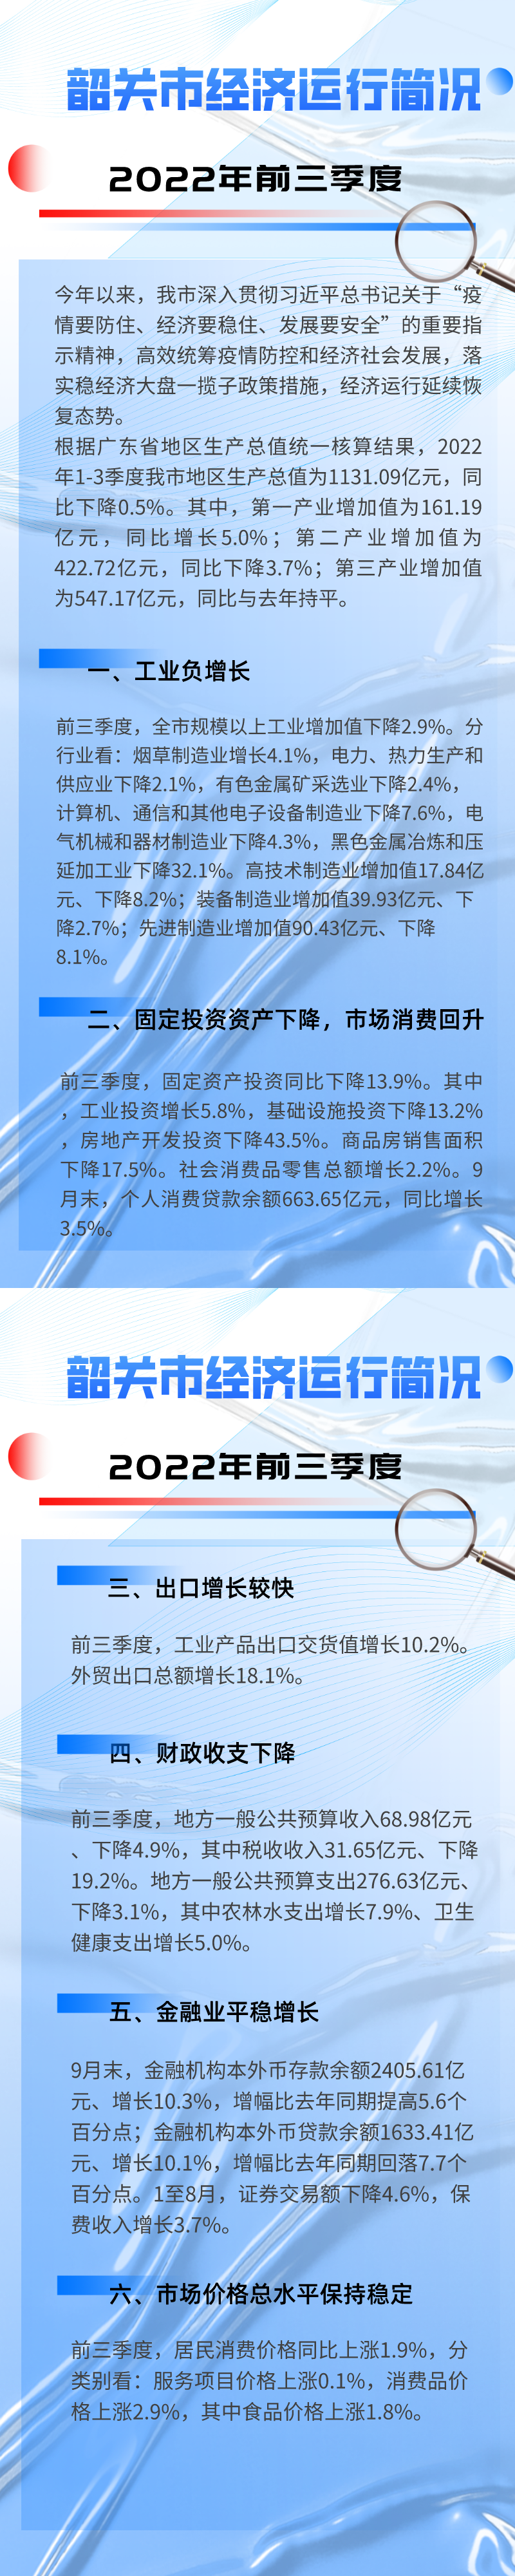 2022年前三季度韶关市经济运行简况__2022-11-17+17_33_59.png